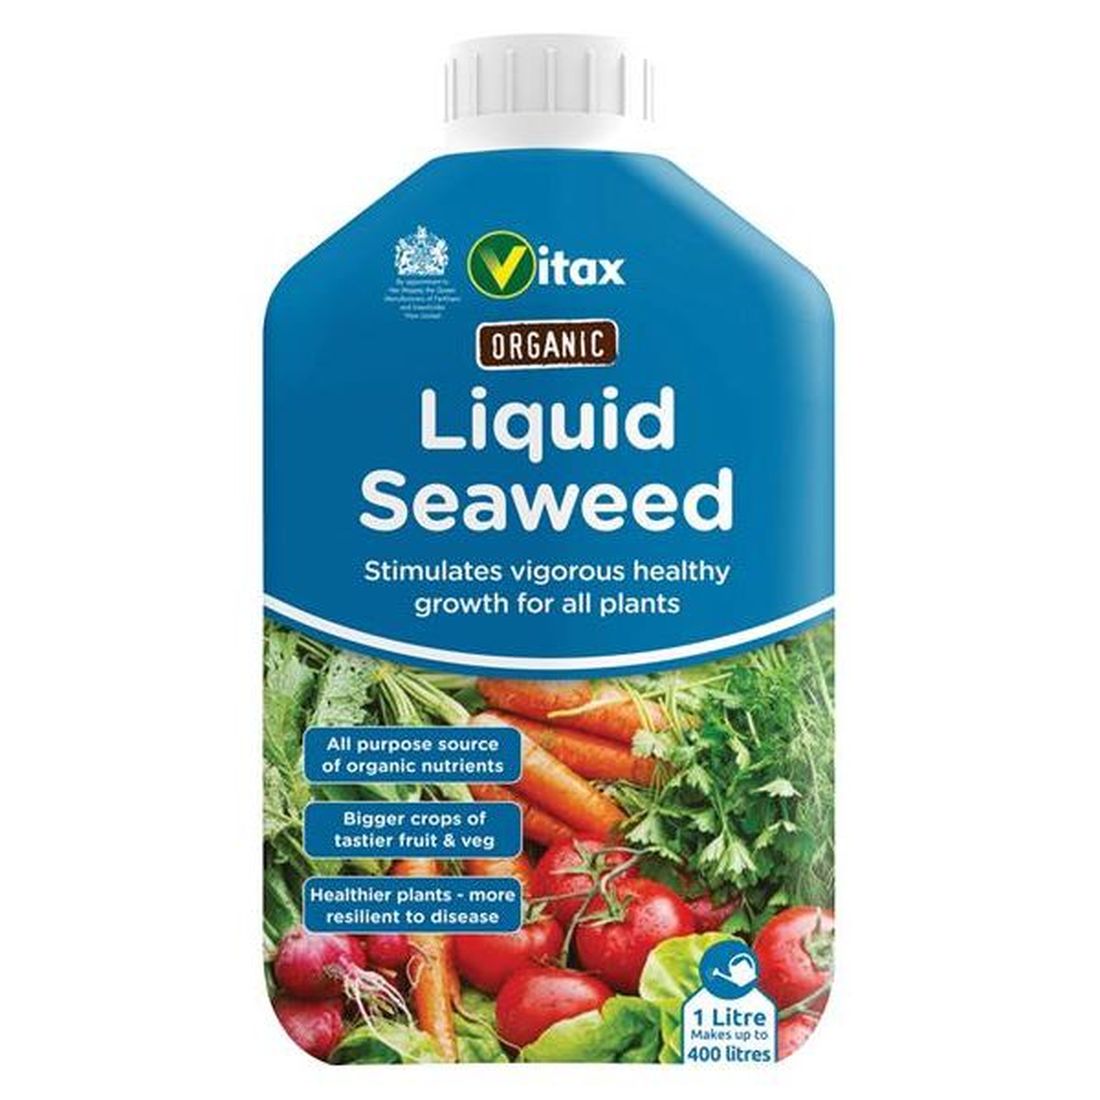 Vitax Organic Liquid Seaweed 1 litre    